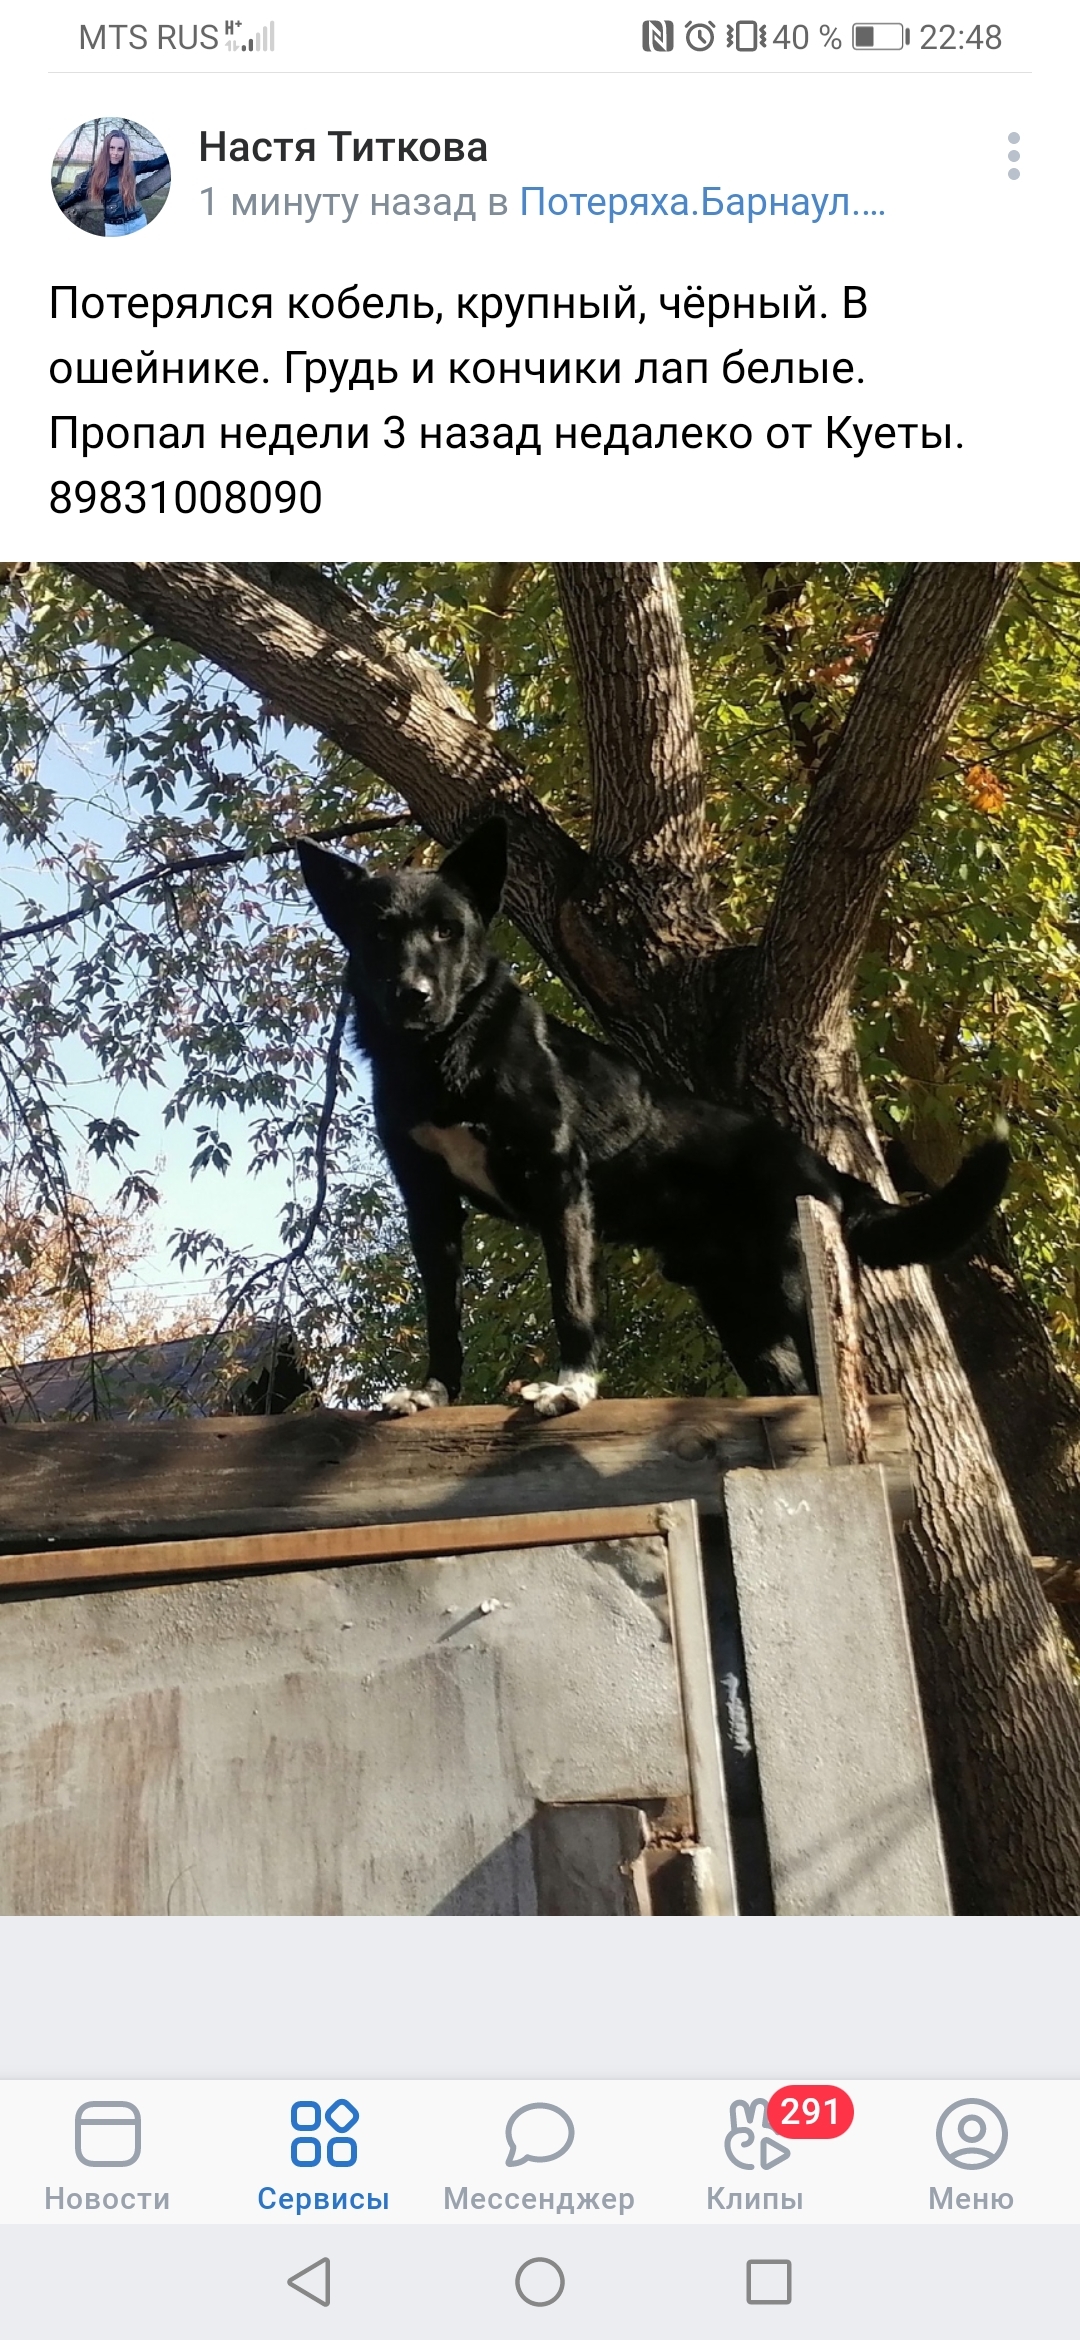 Пропала собака Крупный, чёрный кобель. Южный проезд, Барнаул